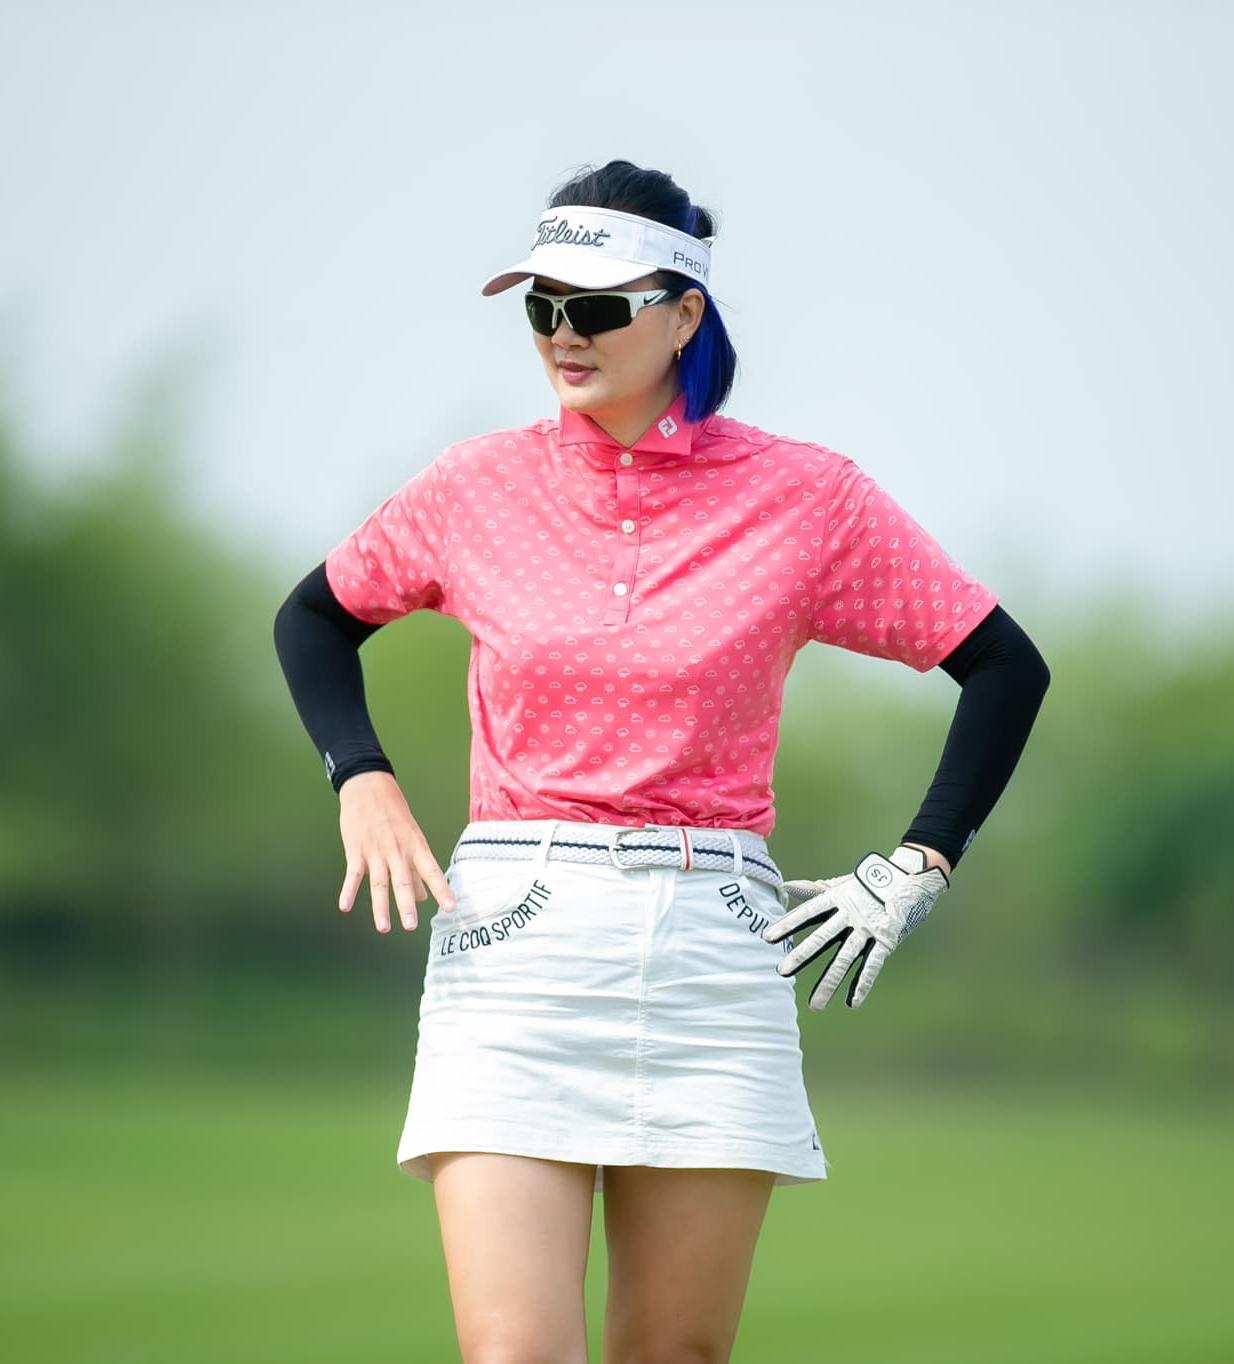 Sau khi giải nghệ, Kim Huệ mong muốn chơi golf tốt giống như môn thể thao yêu thích thứ 2.